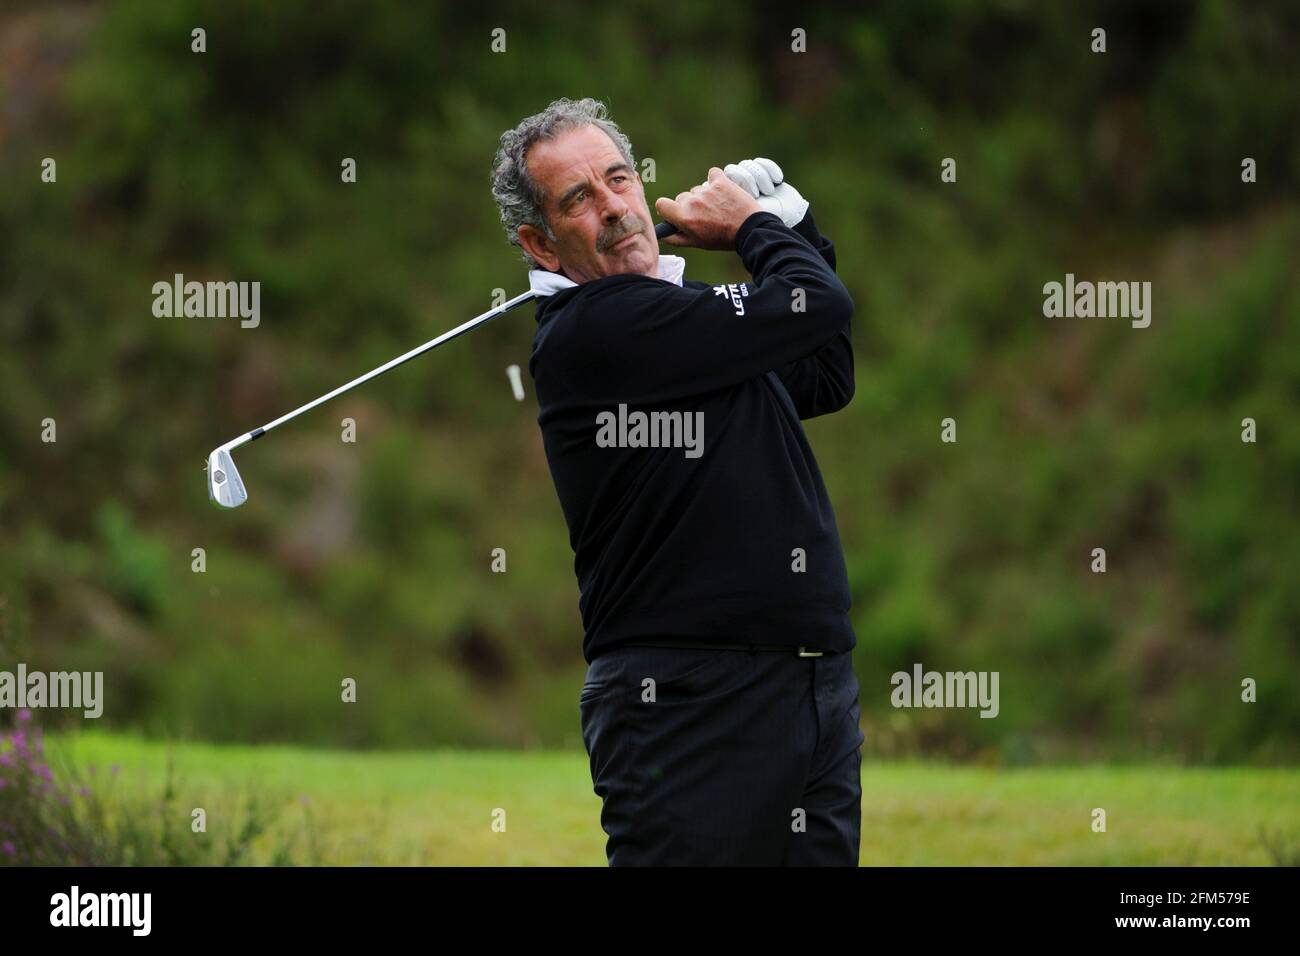 El golfista y comentarista de televisión Sam Torrance Foto de stock